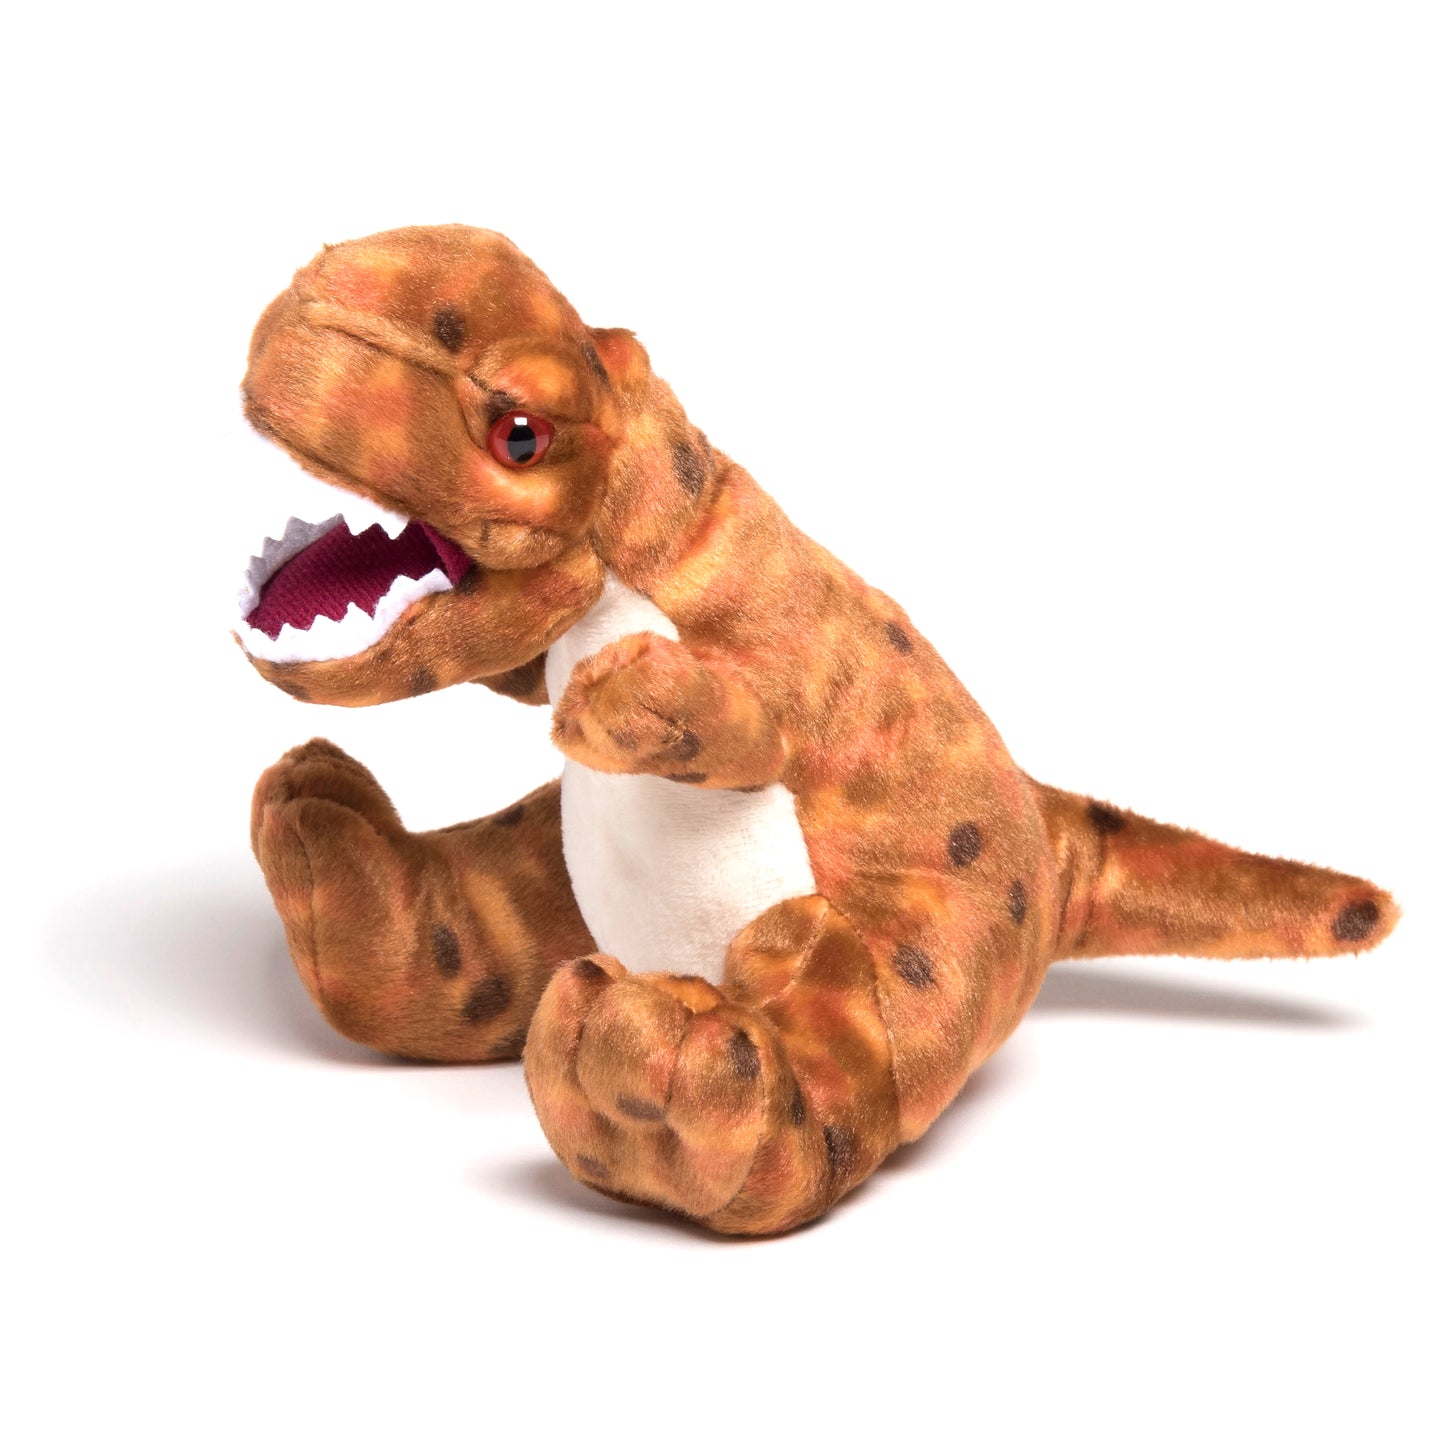 Cuddlekins Tyrannosaurus rex Stuffed Animal